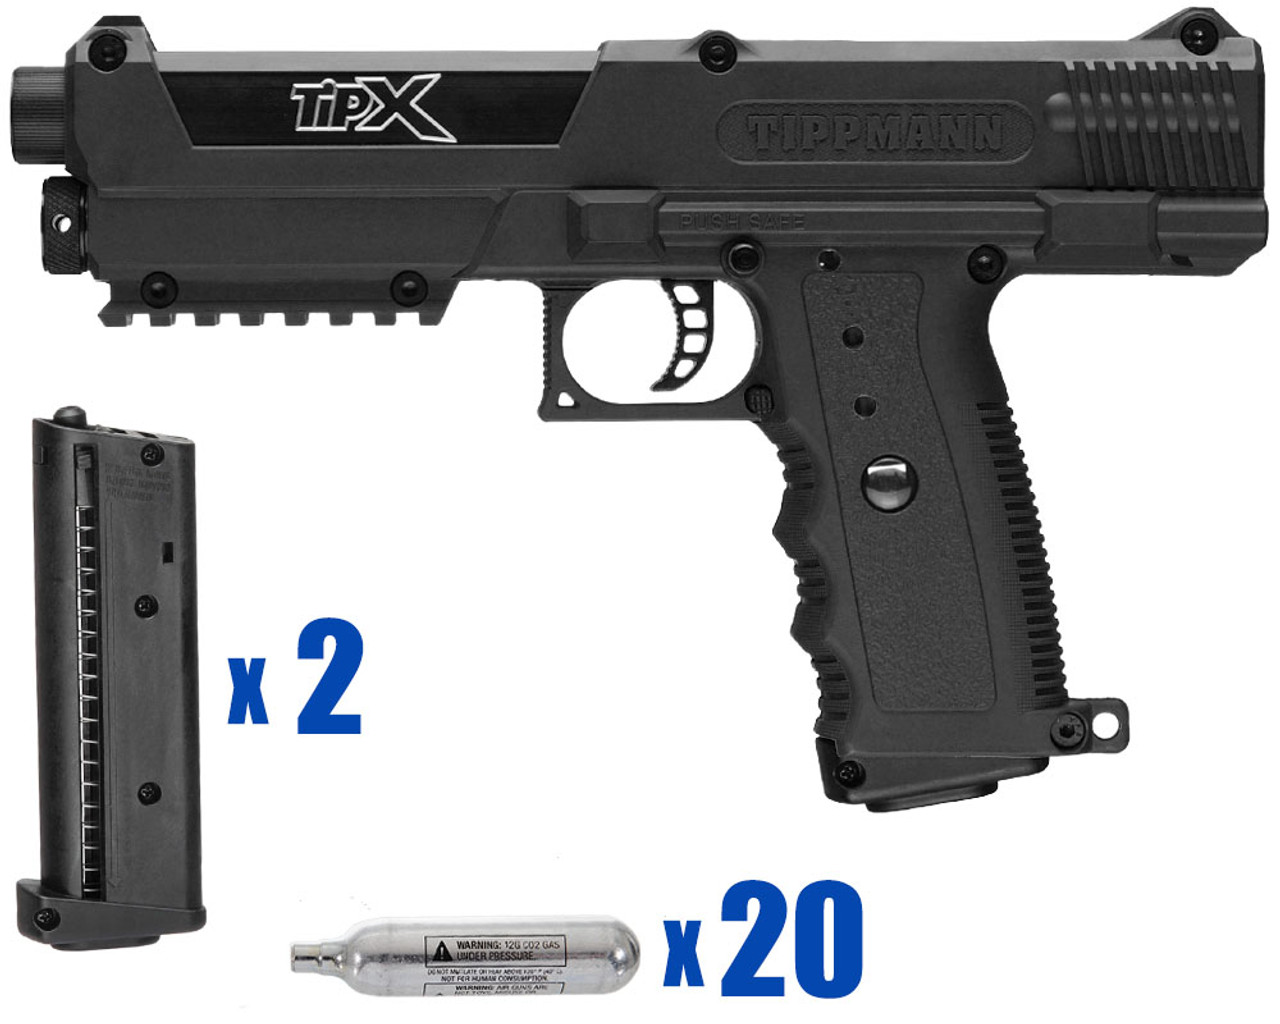 Tippmann TiPX Deluxe Paintball Gun Pistol Kit Black